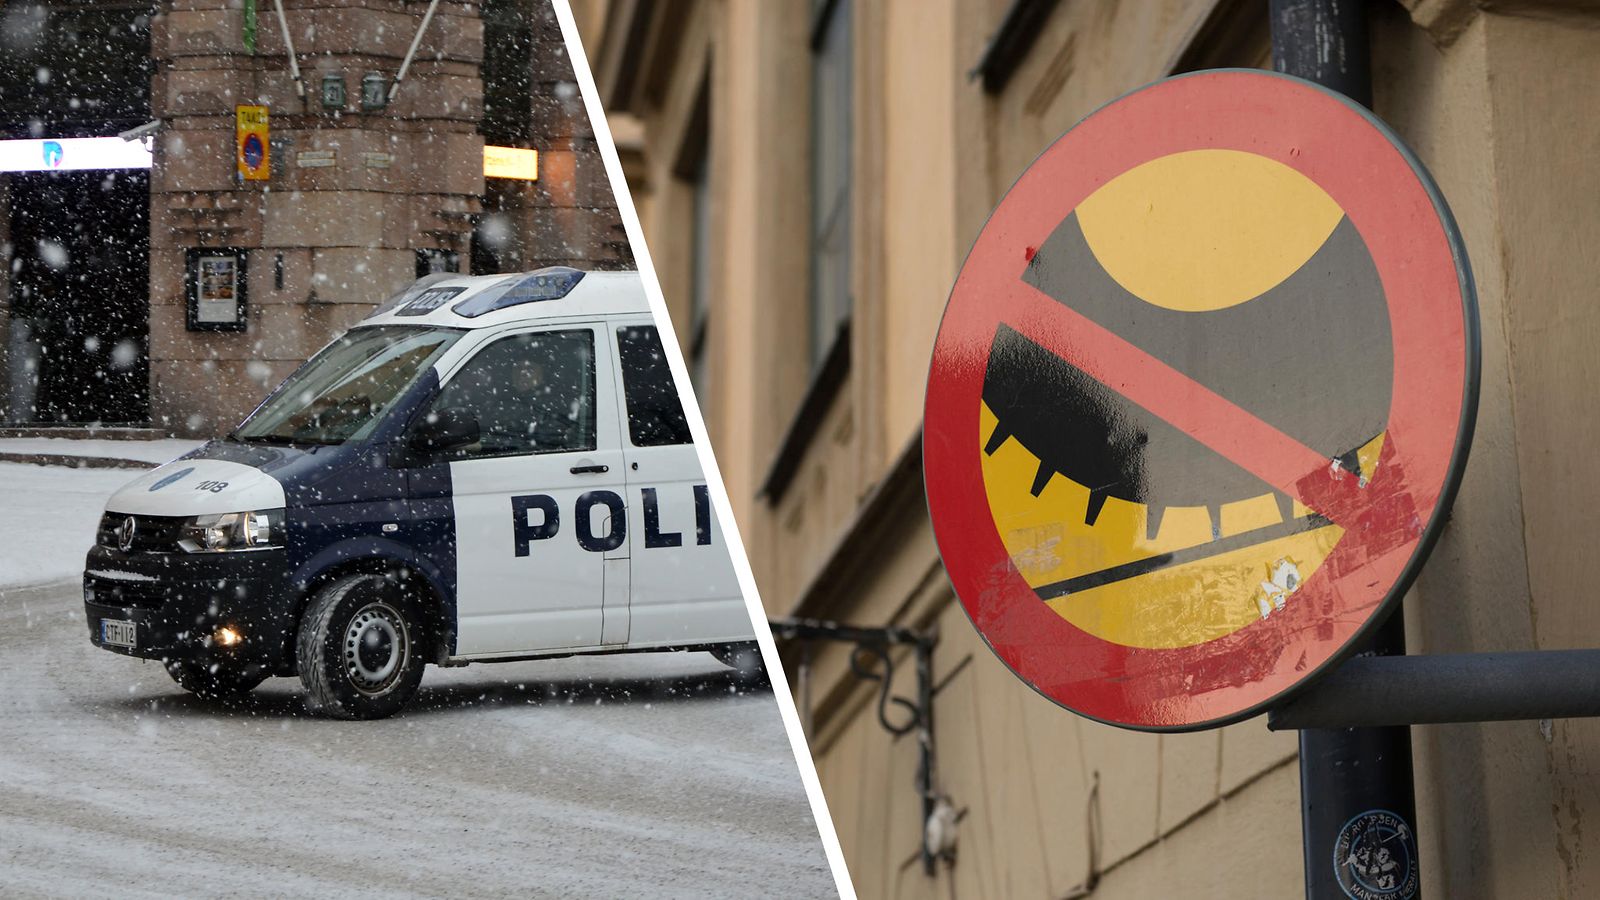 Poliisin nastarengasratsia ei onnistunut Helsingissä – nastarenkailla  ajavia oli liikaa, selvisivät huomautuksella 